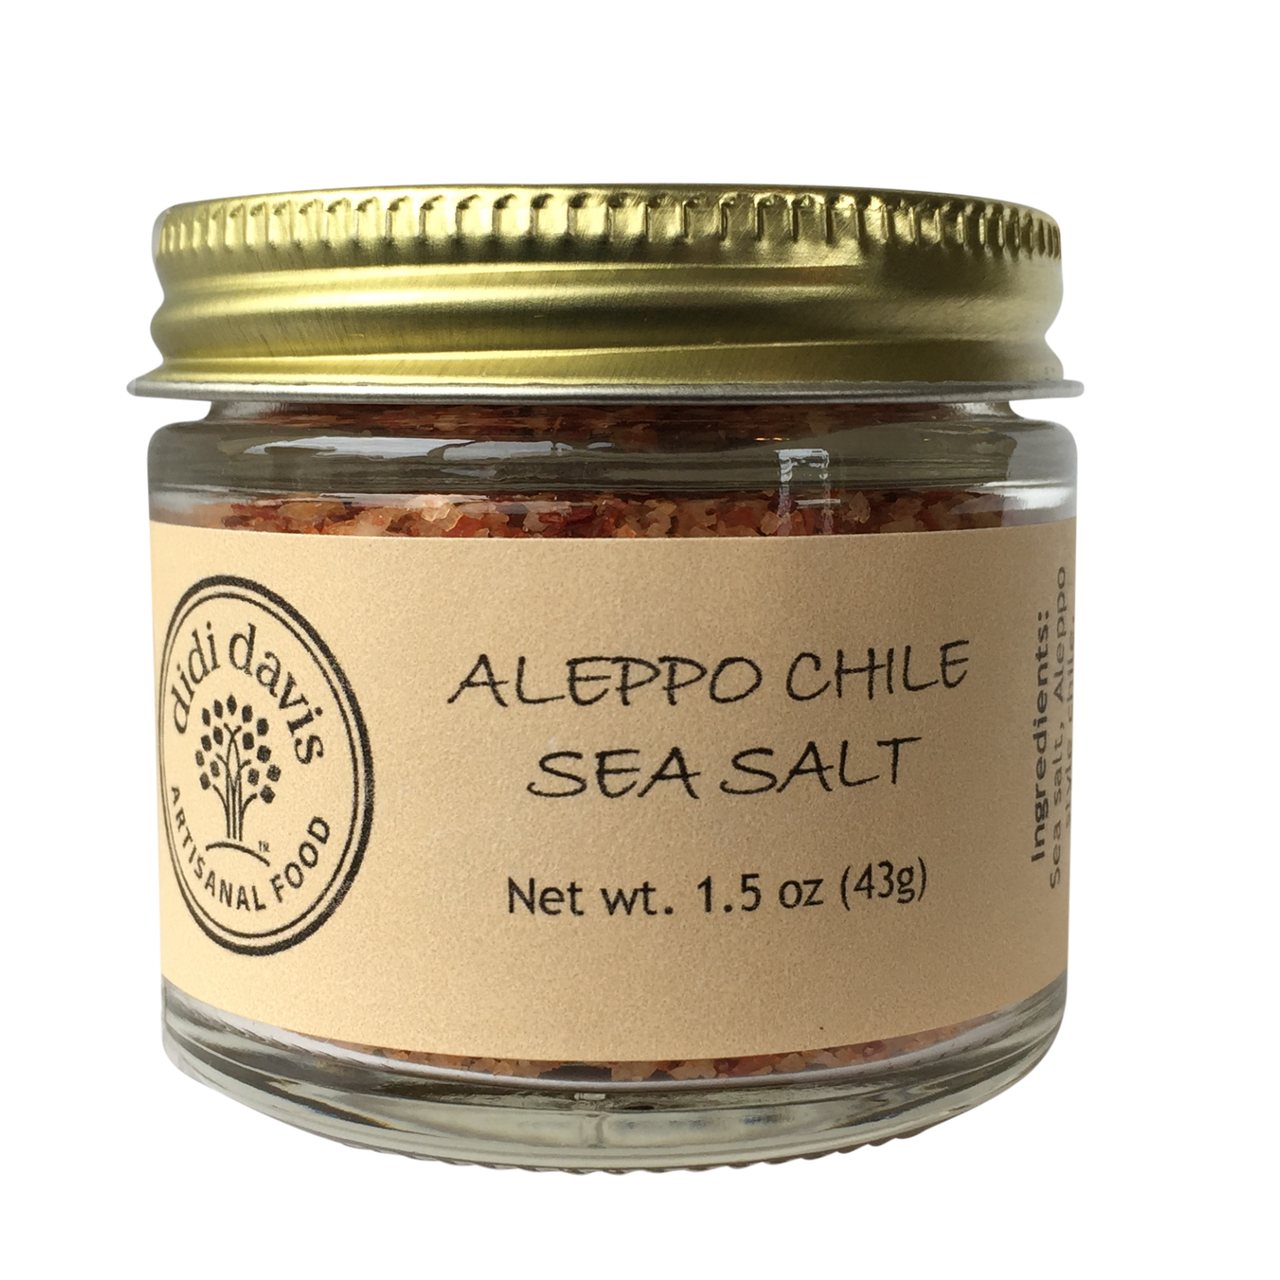 Aleppo Chile Sea Salt